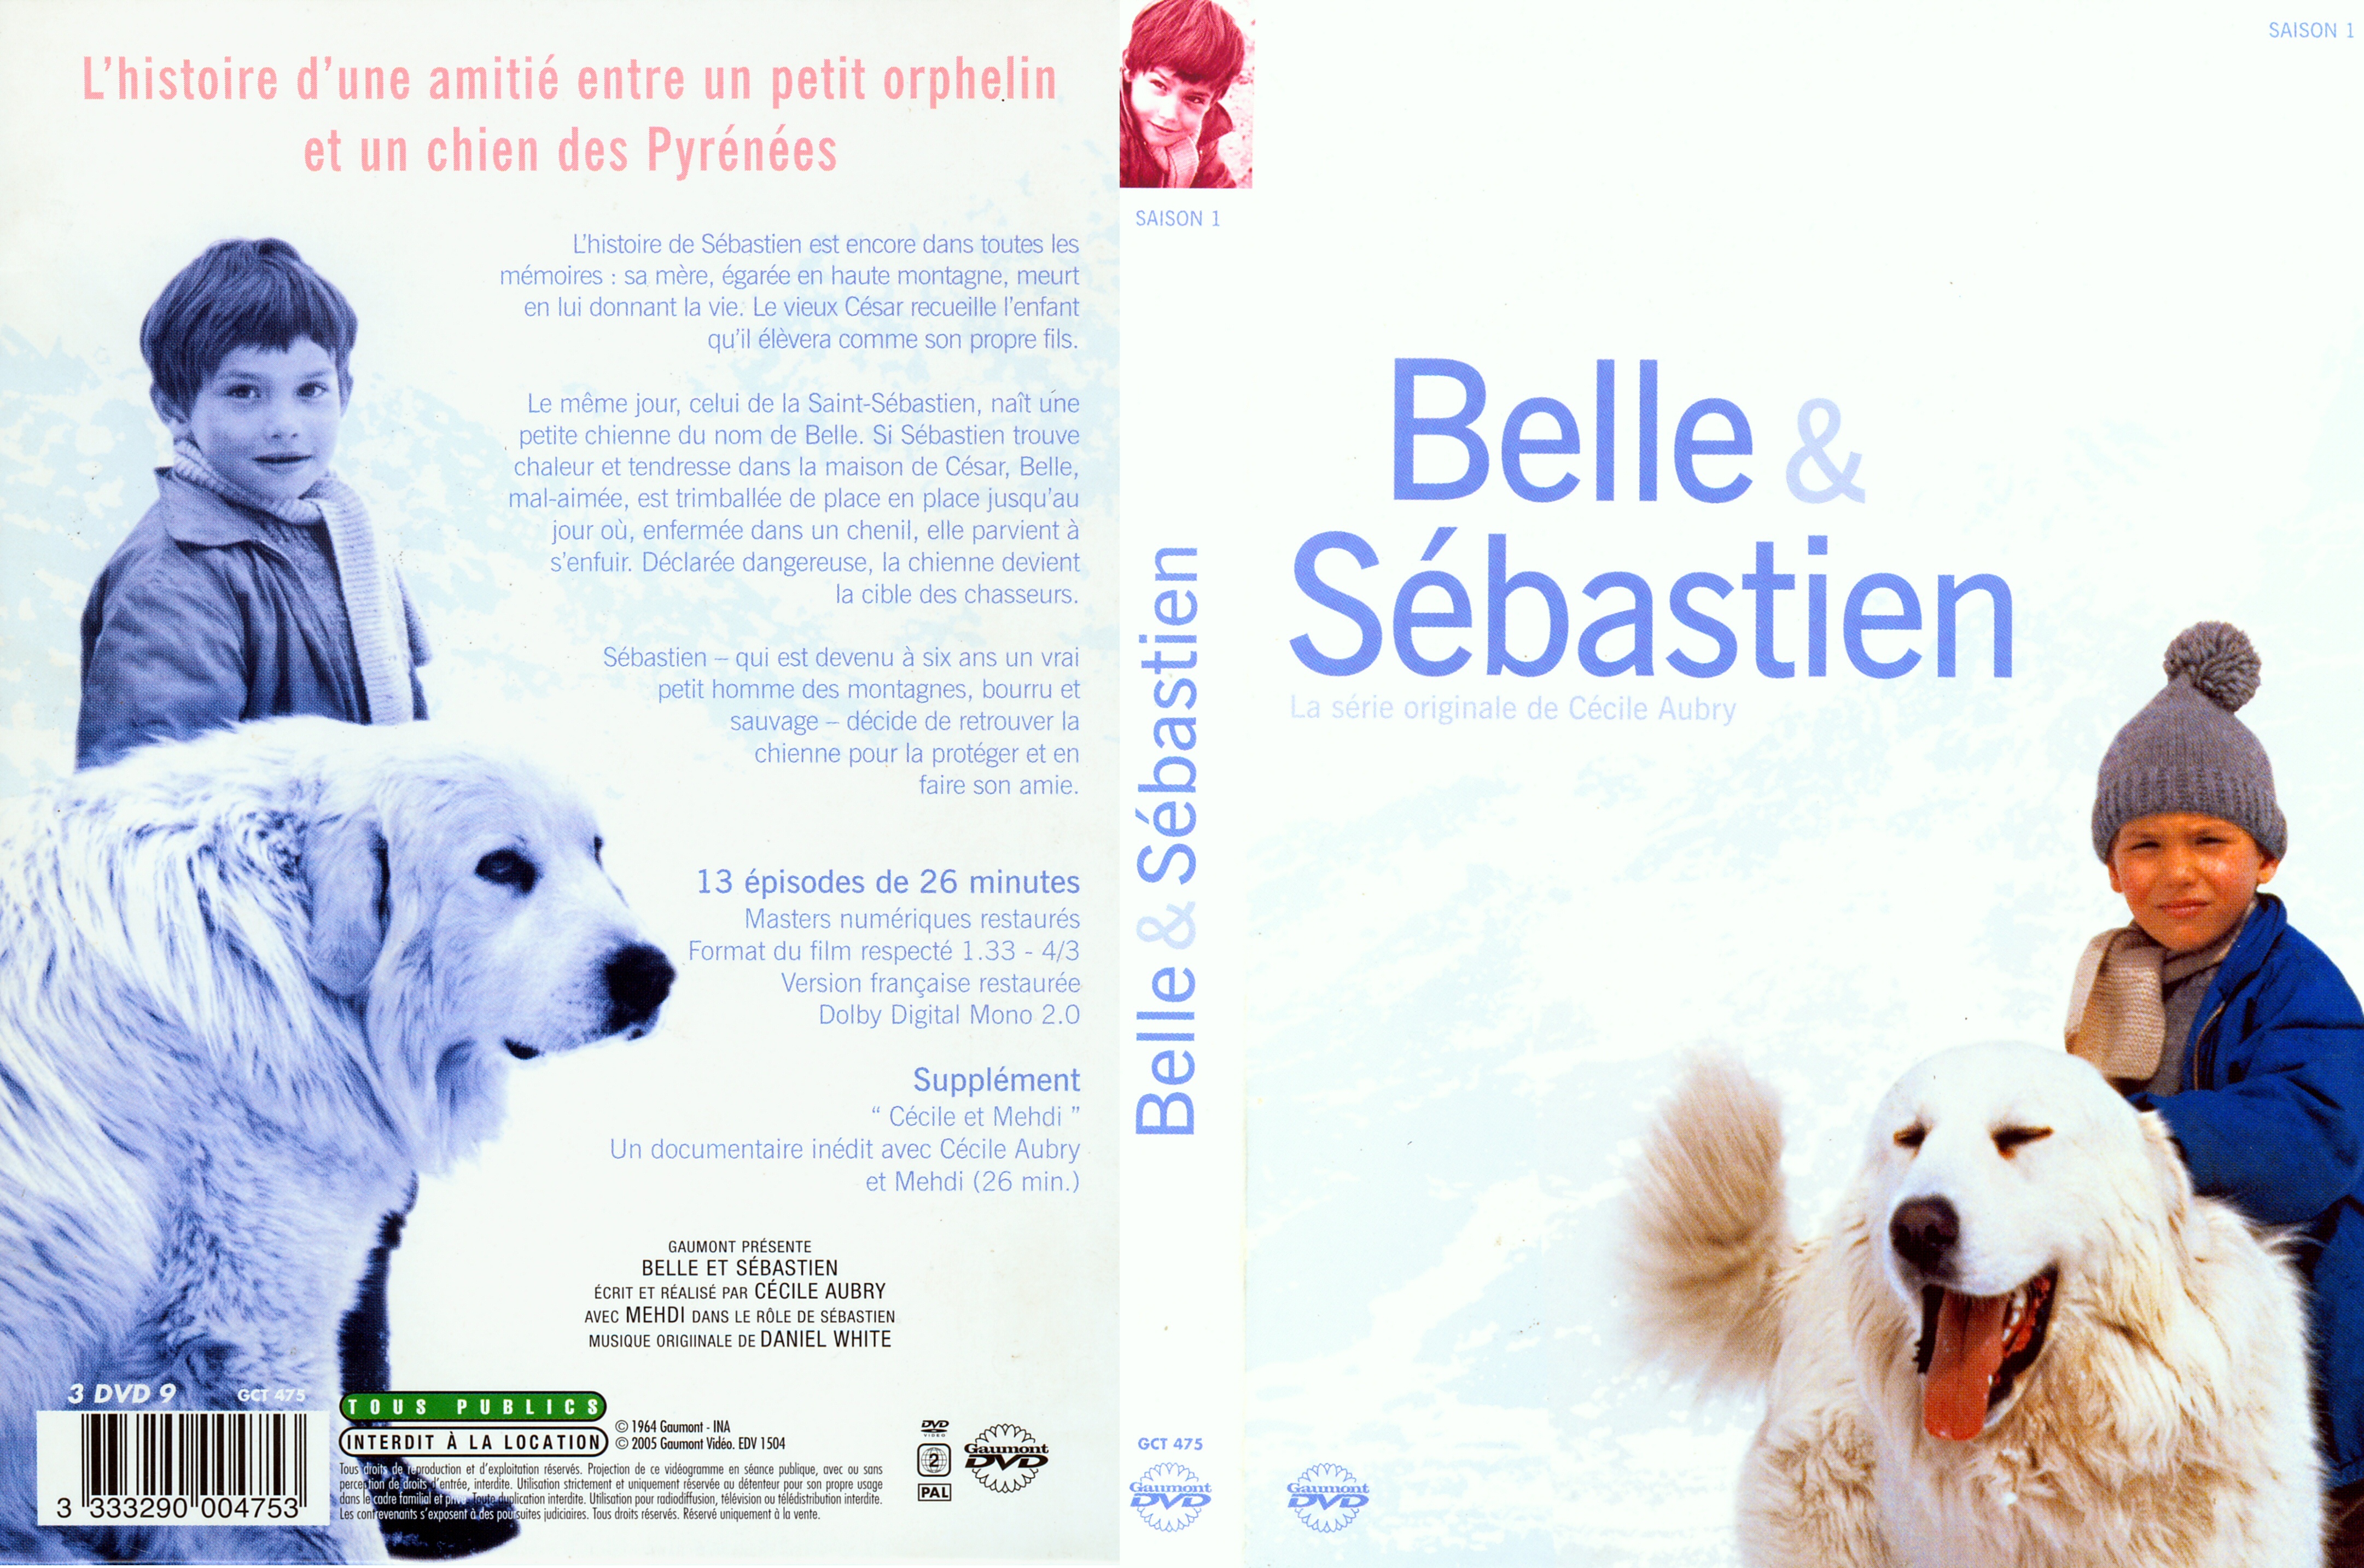 Jaquette DVD Belle et Sebastien saison 1 COFFRET